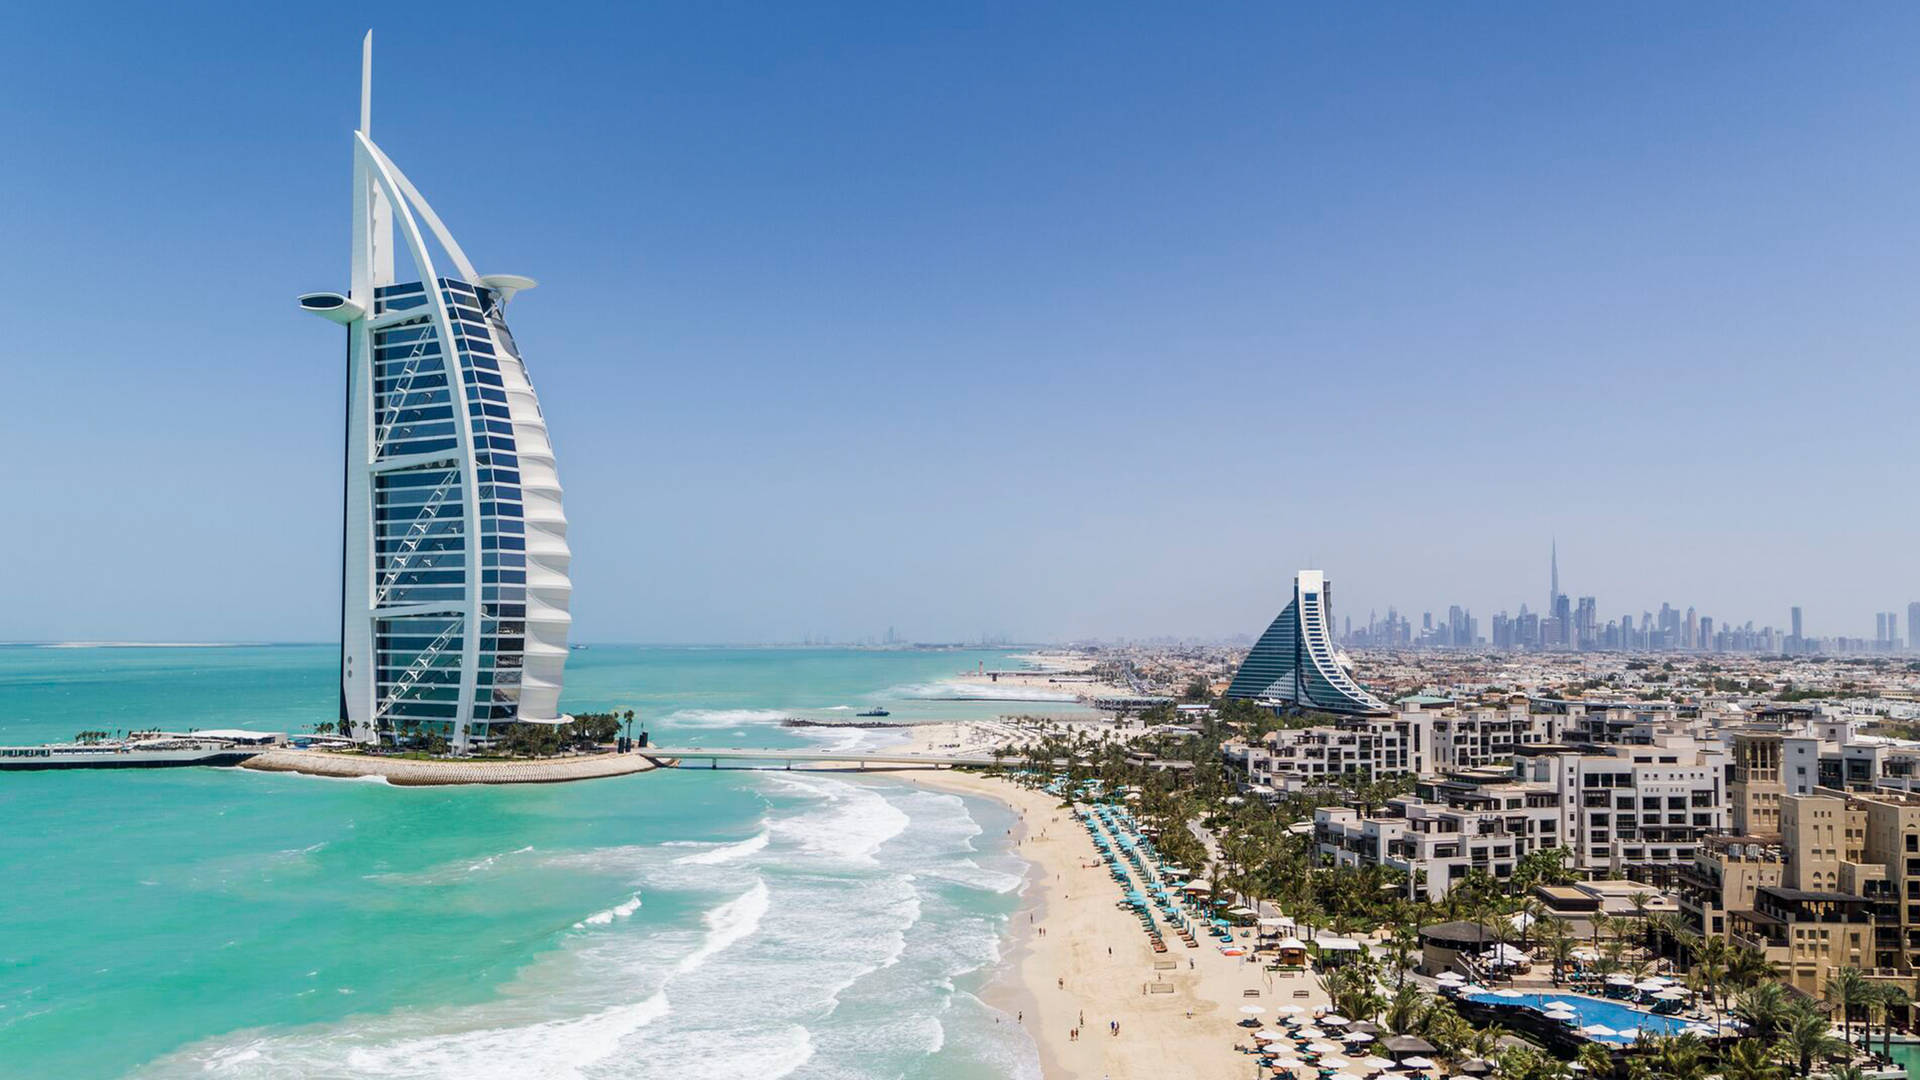 Shoreline view of Burj Al Arab